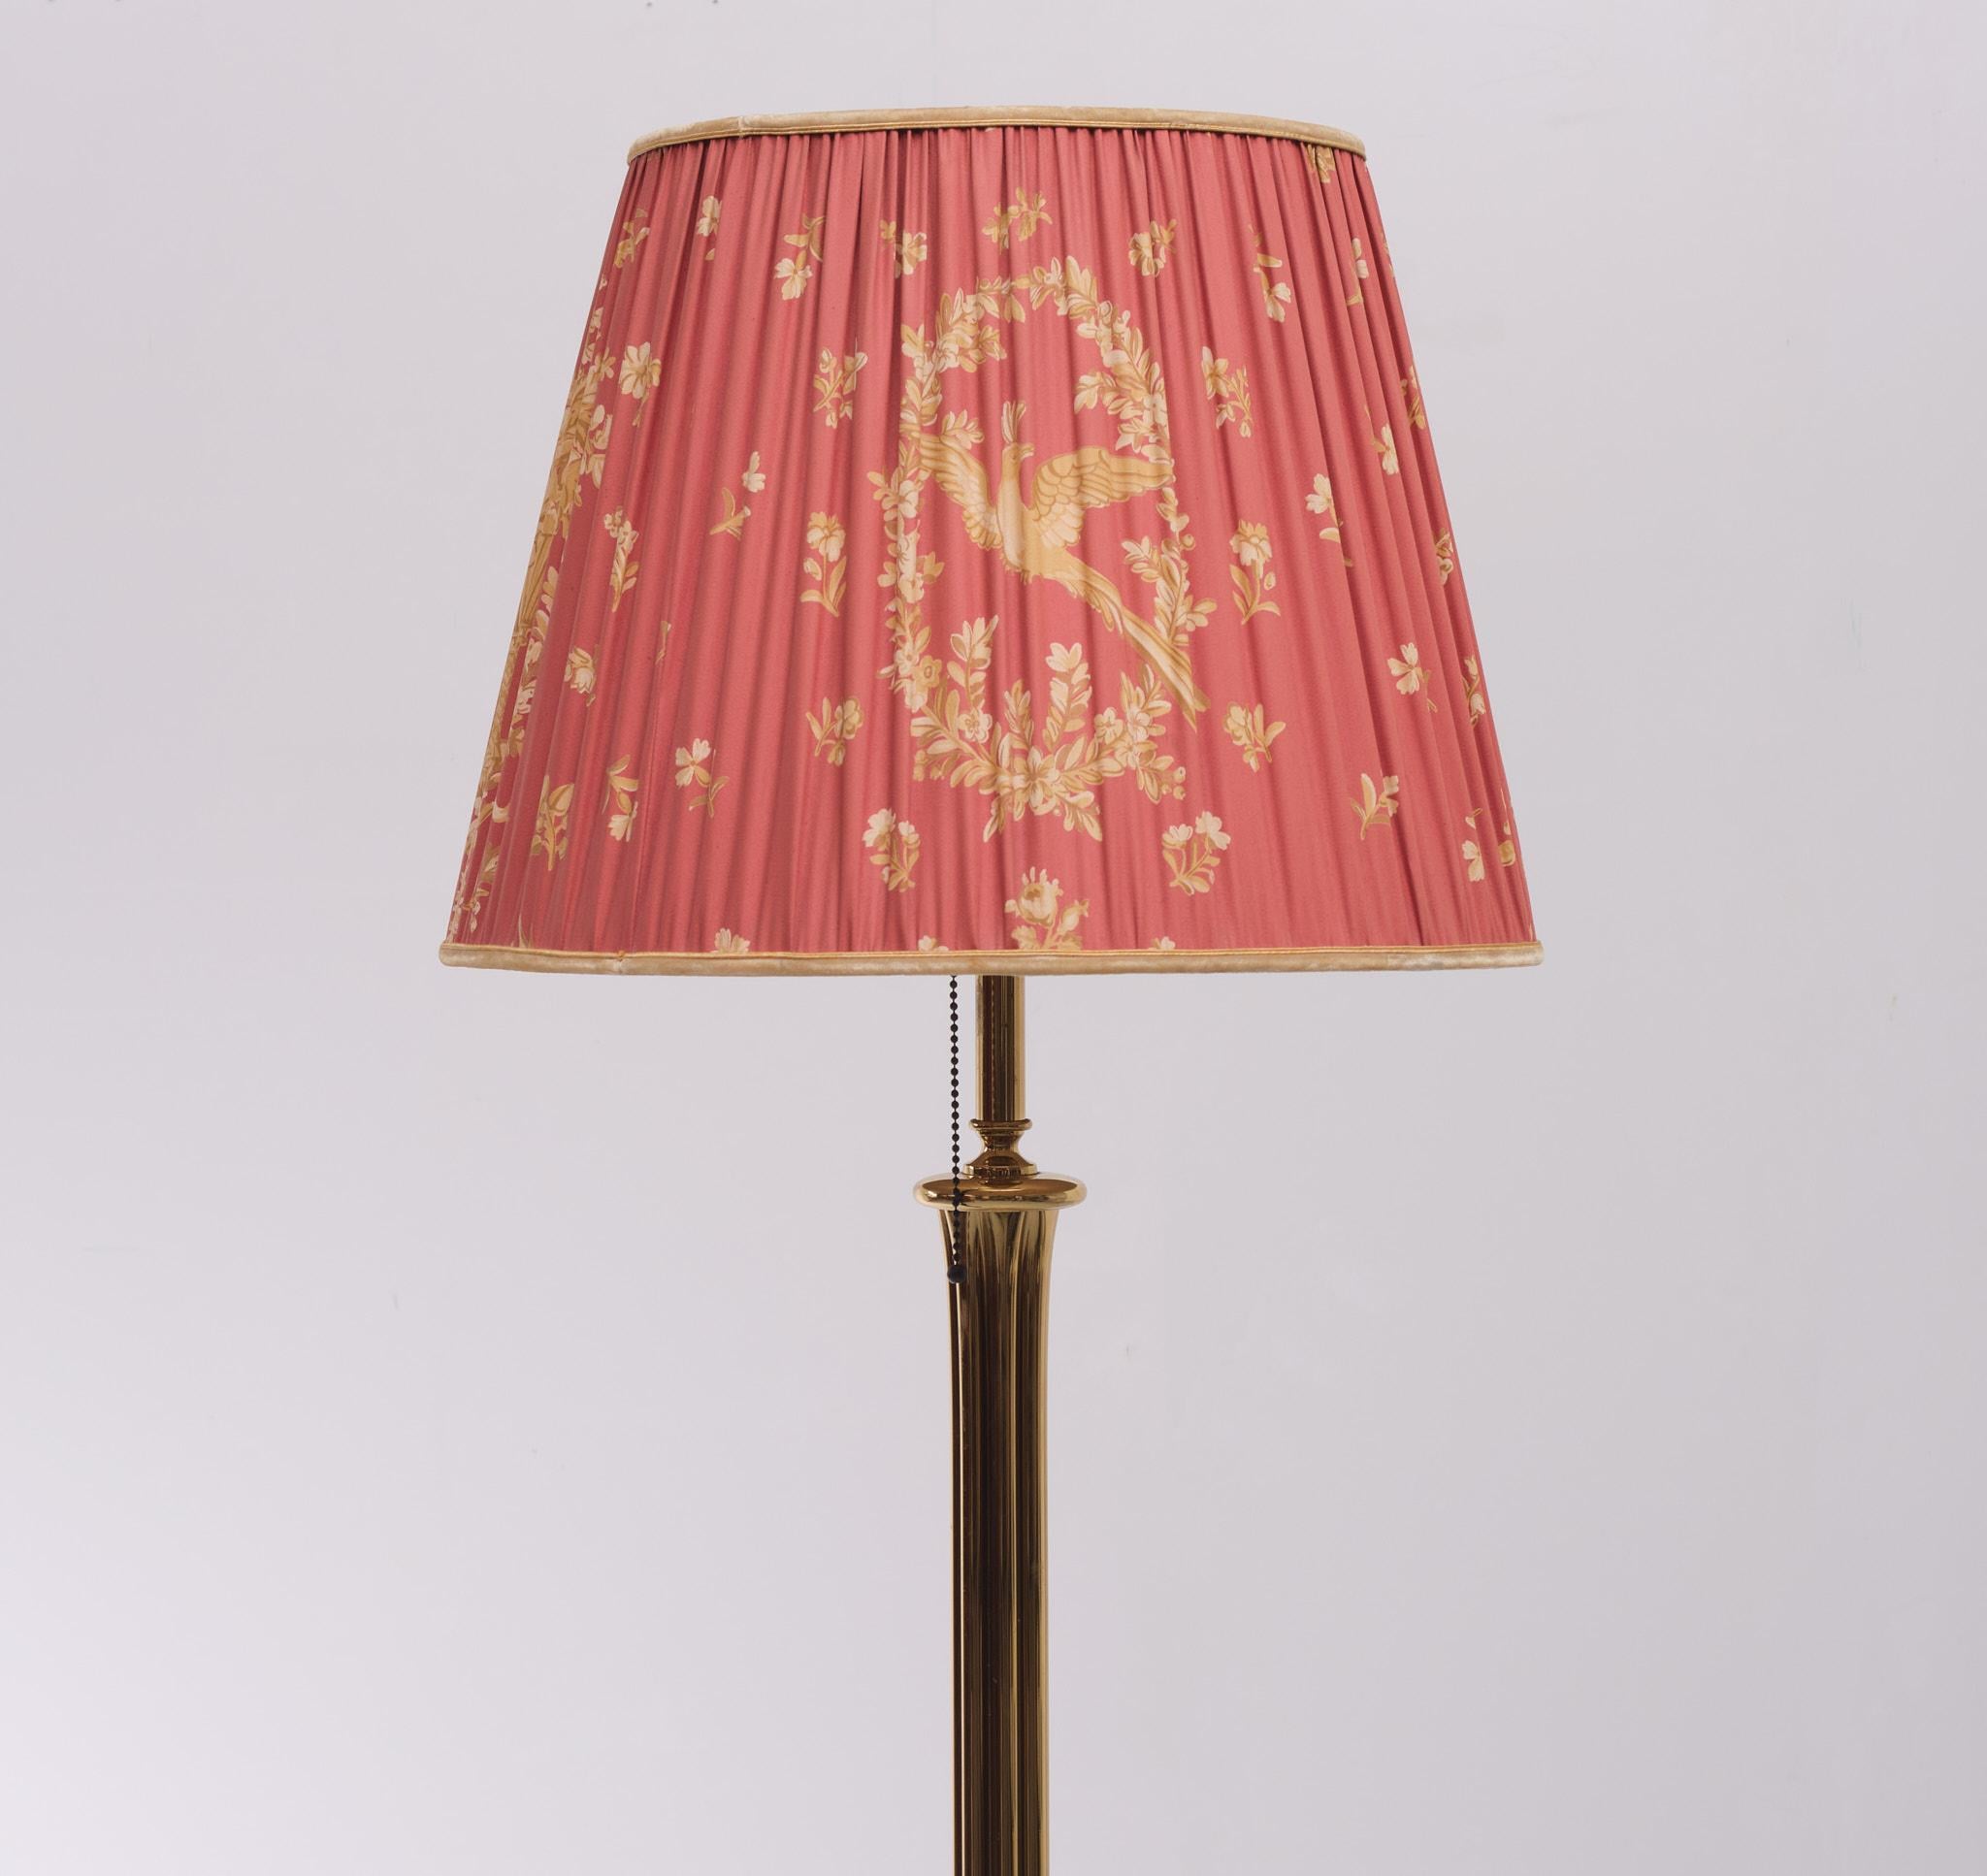 Très beau lampadaire en laiton. Il s'agit d'une magnifique couleur rouge pierre avec des oiseaux et des fleurs dorés. Interrupteur à tirette. Deux grandes ampoules E27. Fabriqué par Herda Amsterdam dans les années 1970.
 